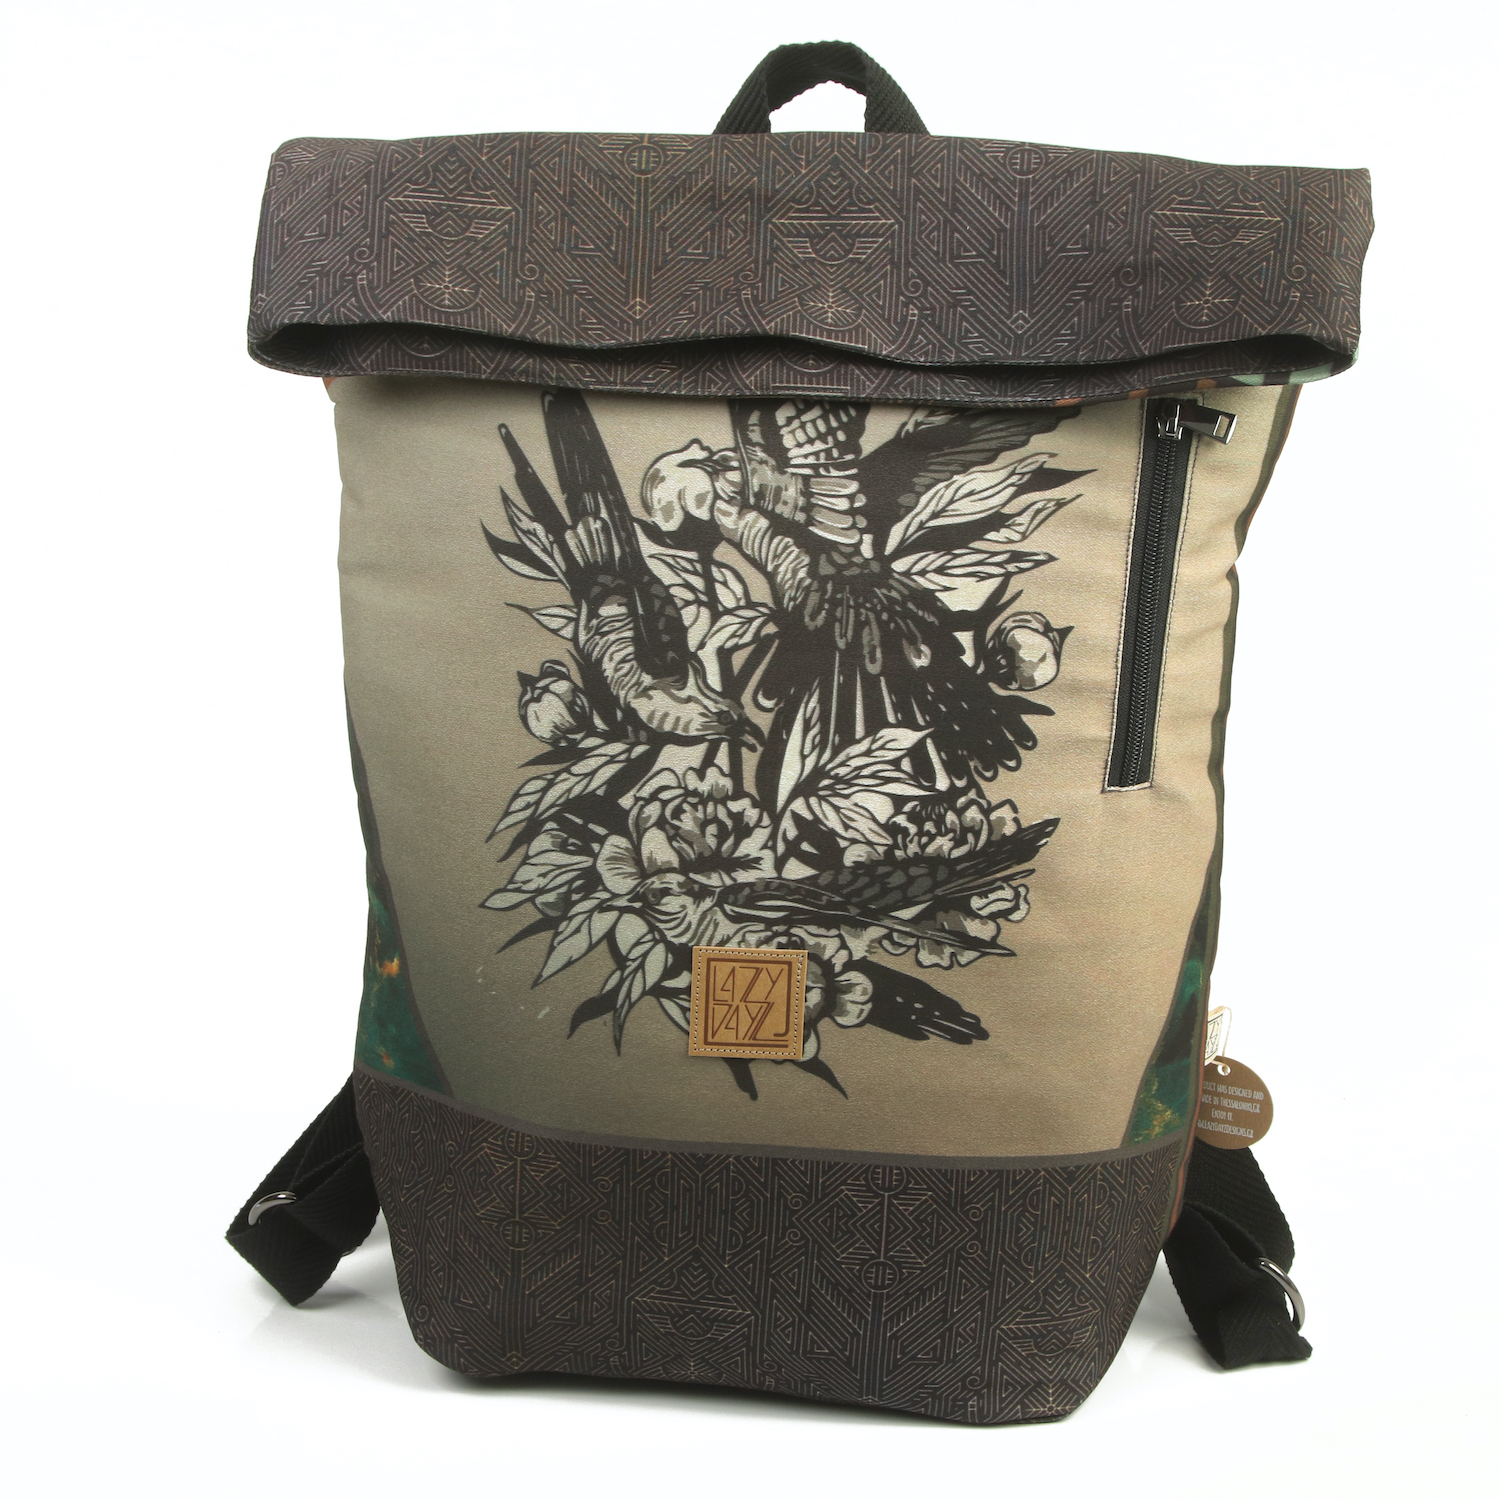 LazyDayz Designs Backpack γυναικείος σάκος πλάτης χειροποίητος bb0804